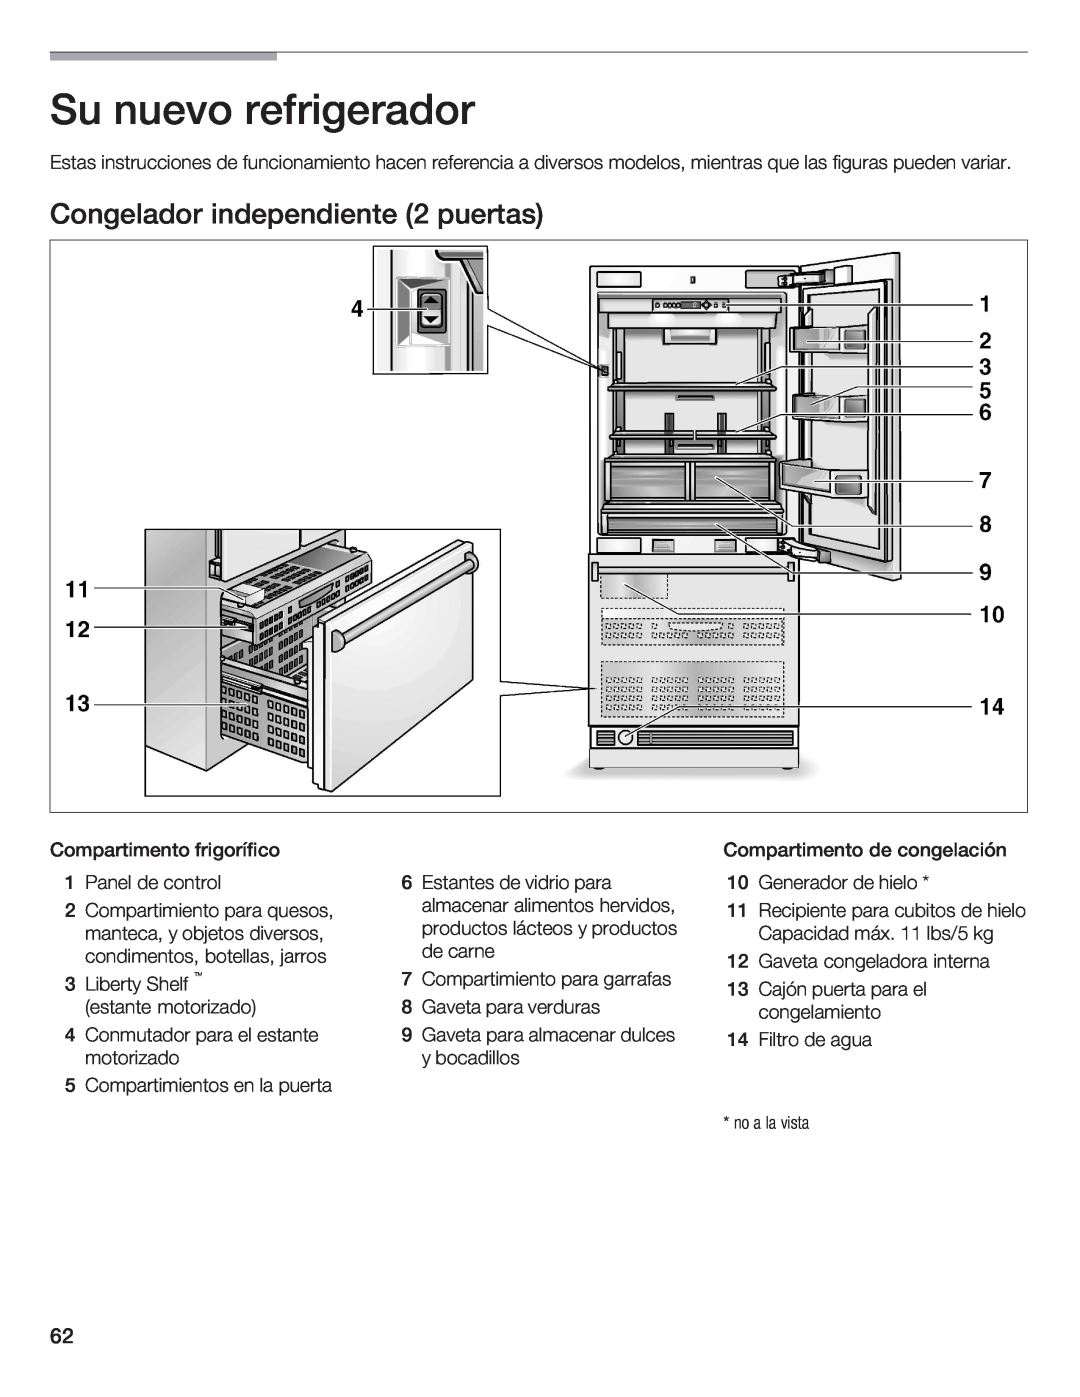 Thermador 9000189698 manual Su nuevo refrigerador, Congelador independiente 2 puertas 